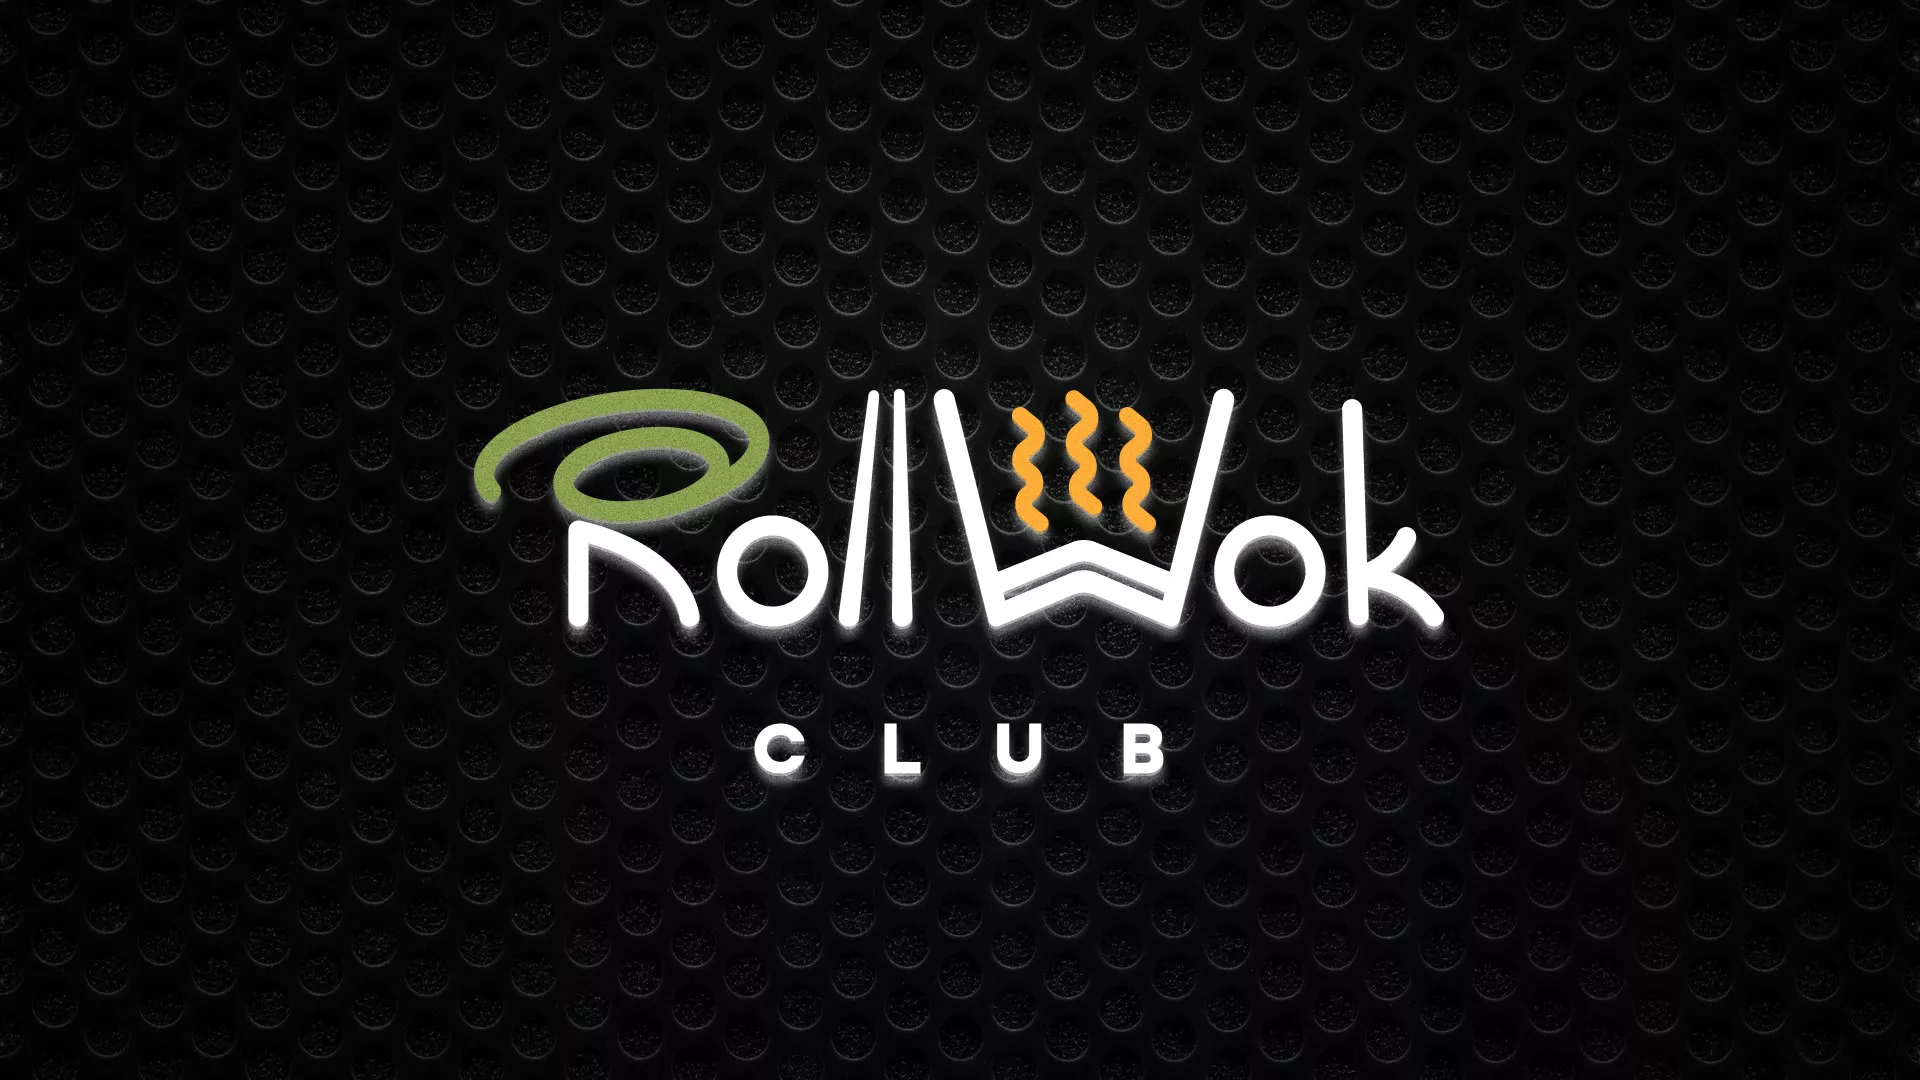 Брендирование торговых точек суши-бара «Roll Wok Club» в Алатыре